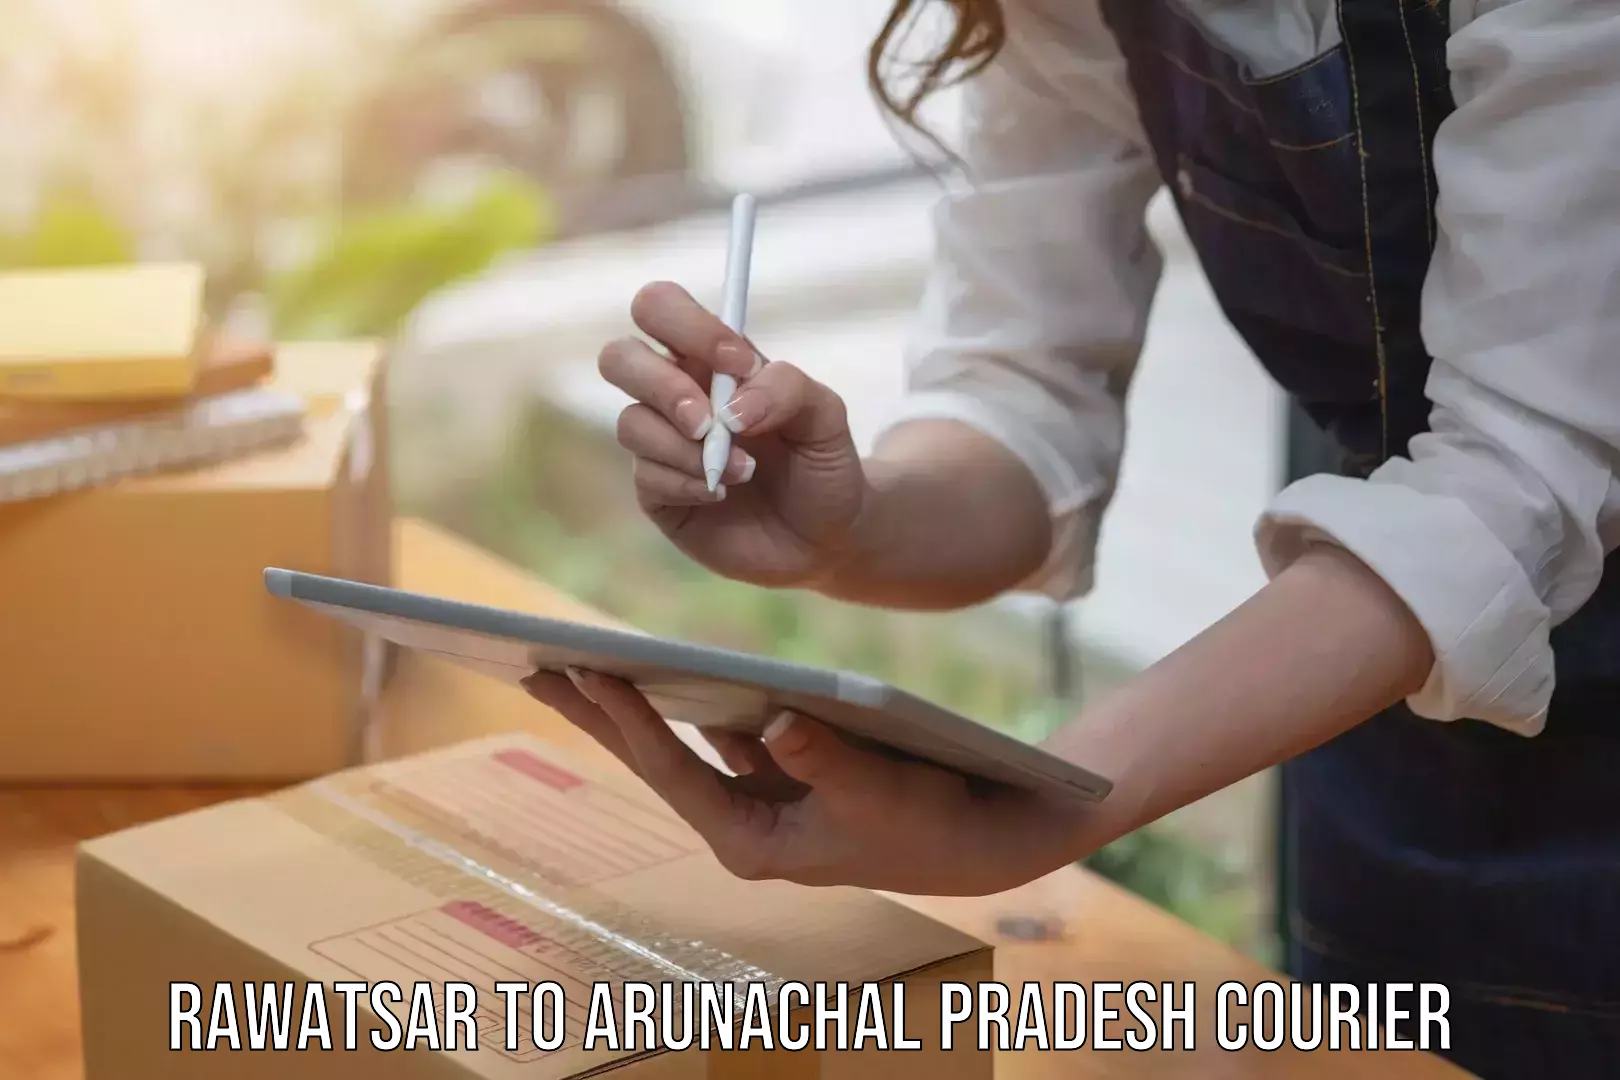 Courier services in Rawatsar to Arunachal Pradesh